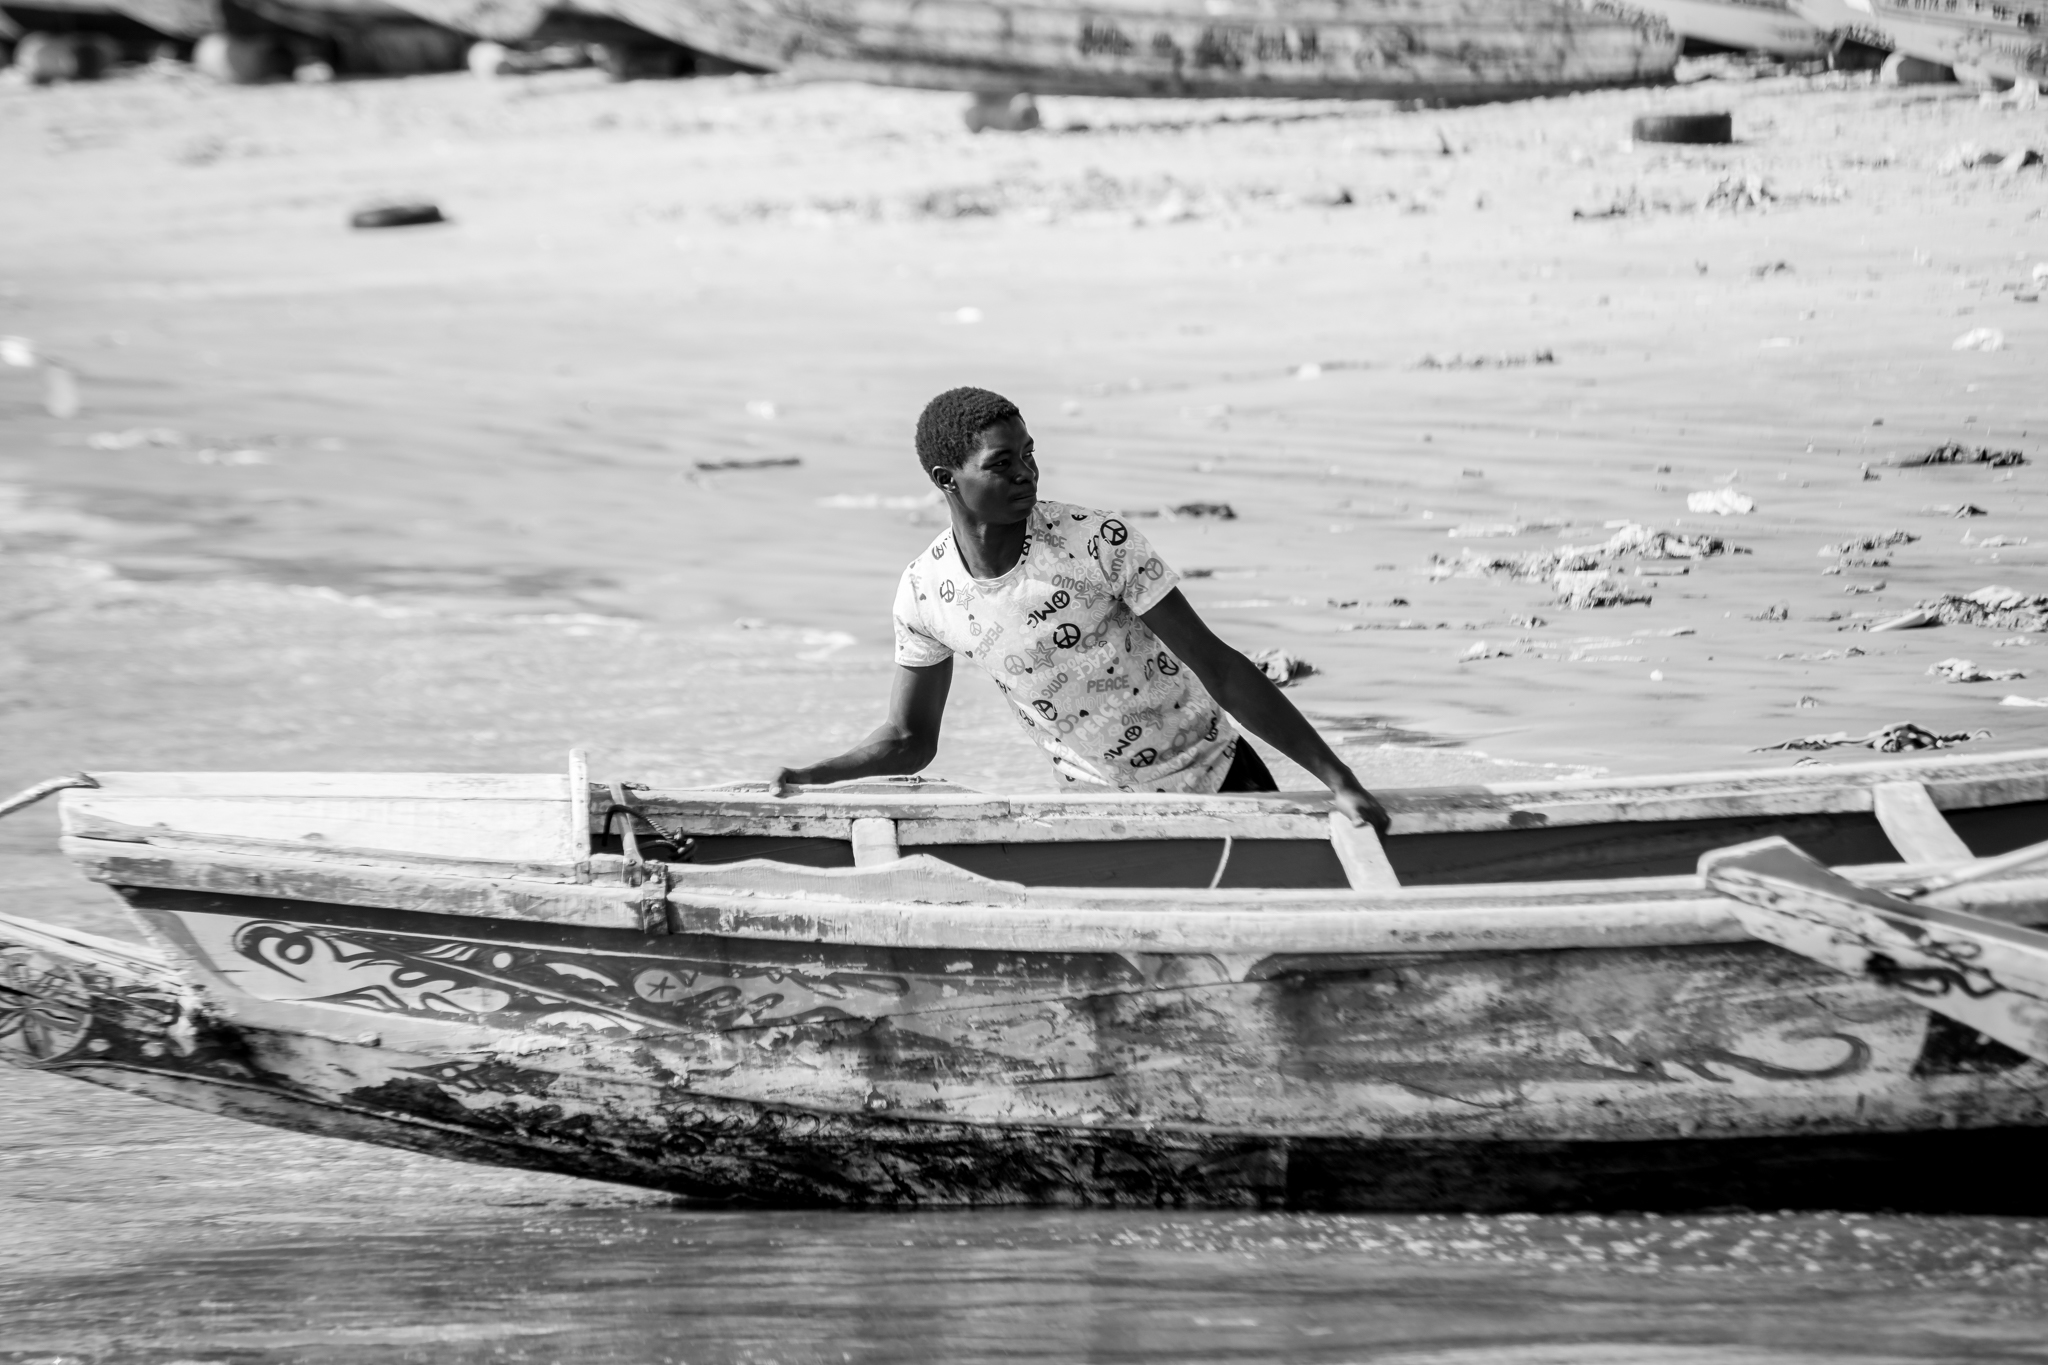 Tras la jornada de capturas frente a las playas senegalesas los pescadores recogen con esfuerzo sus barcas o "piraguas" para pasar la noche.